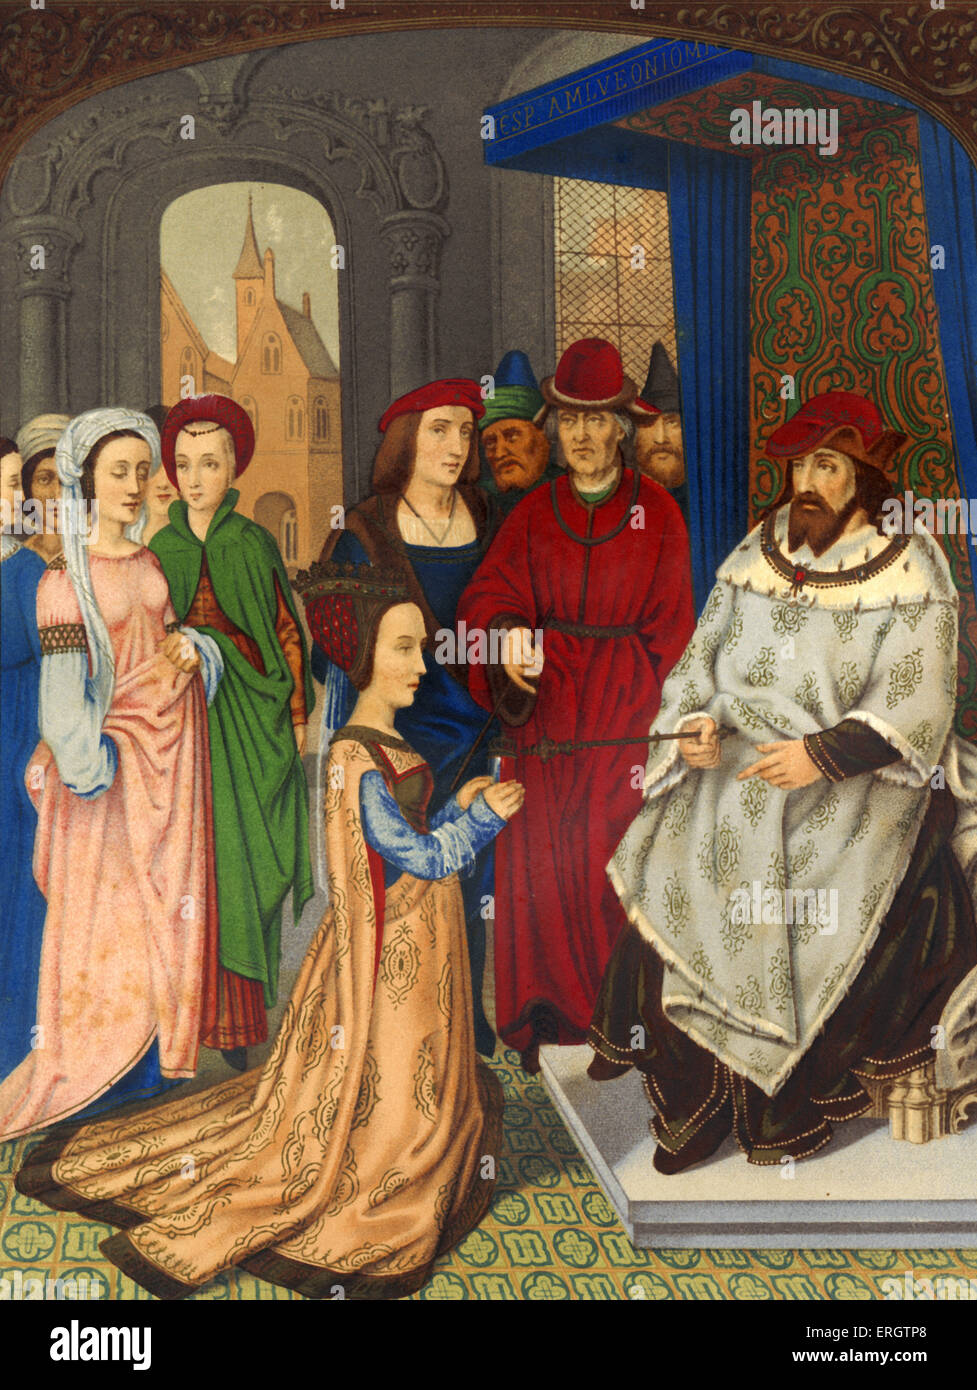 La regina di Saba prima di re Salomone - XV secolo i costumi. Scettro.  Sullo sfondo: cinque della regina 's assistenti femminili e cinque del re  's cortigiani. Illustrazione / stampare da